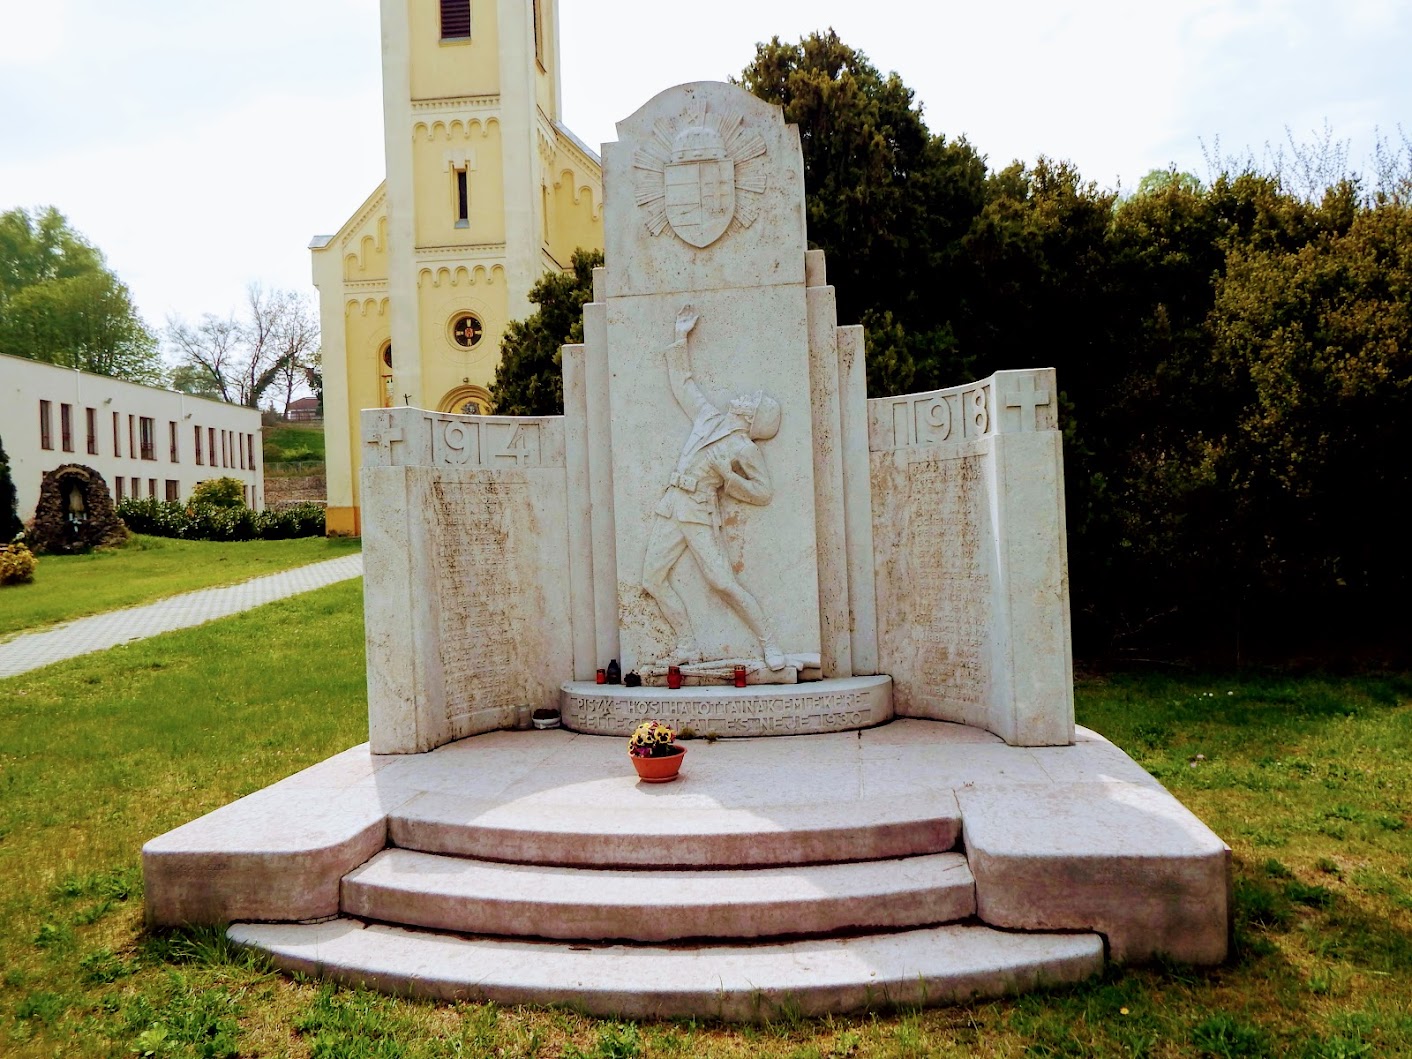 Lábatlan - I. világháborús emlékmű a templomkertben